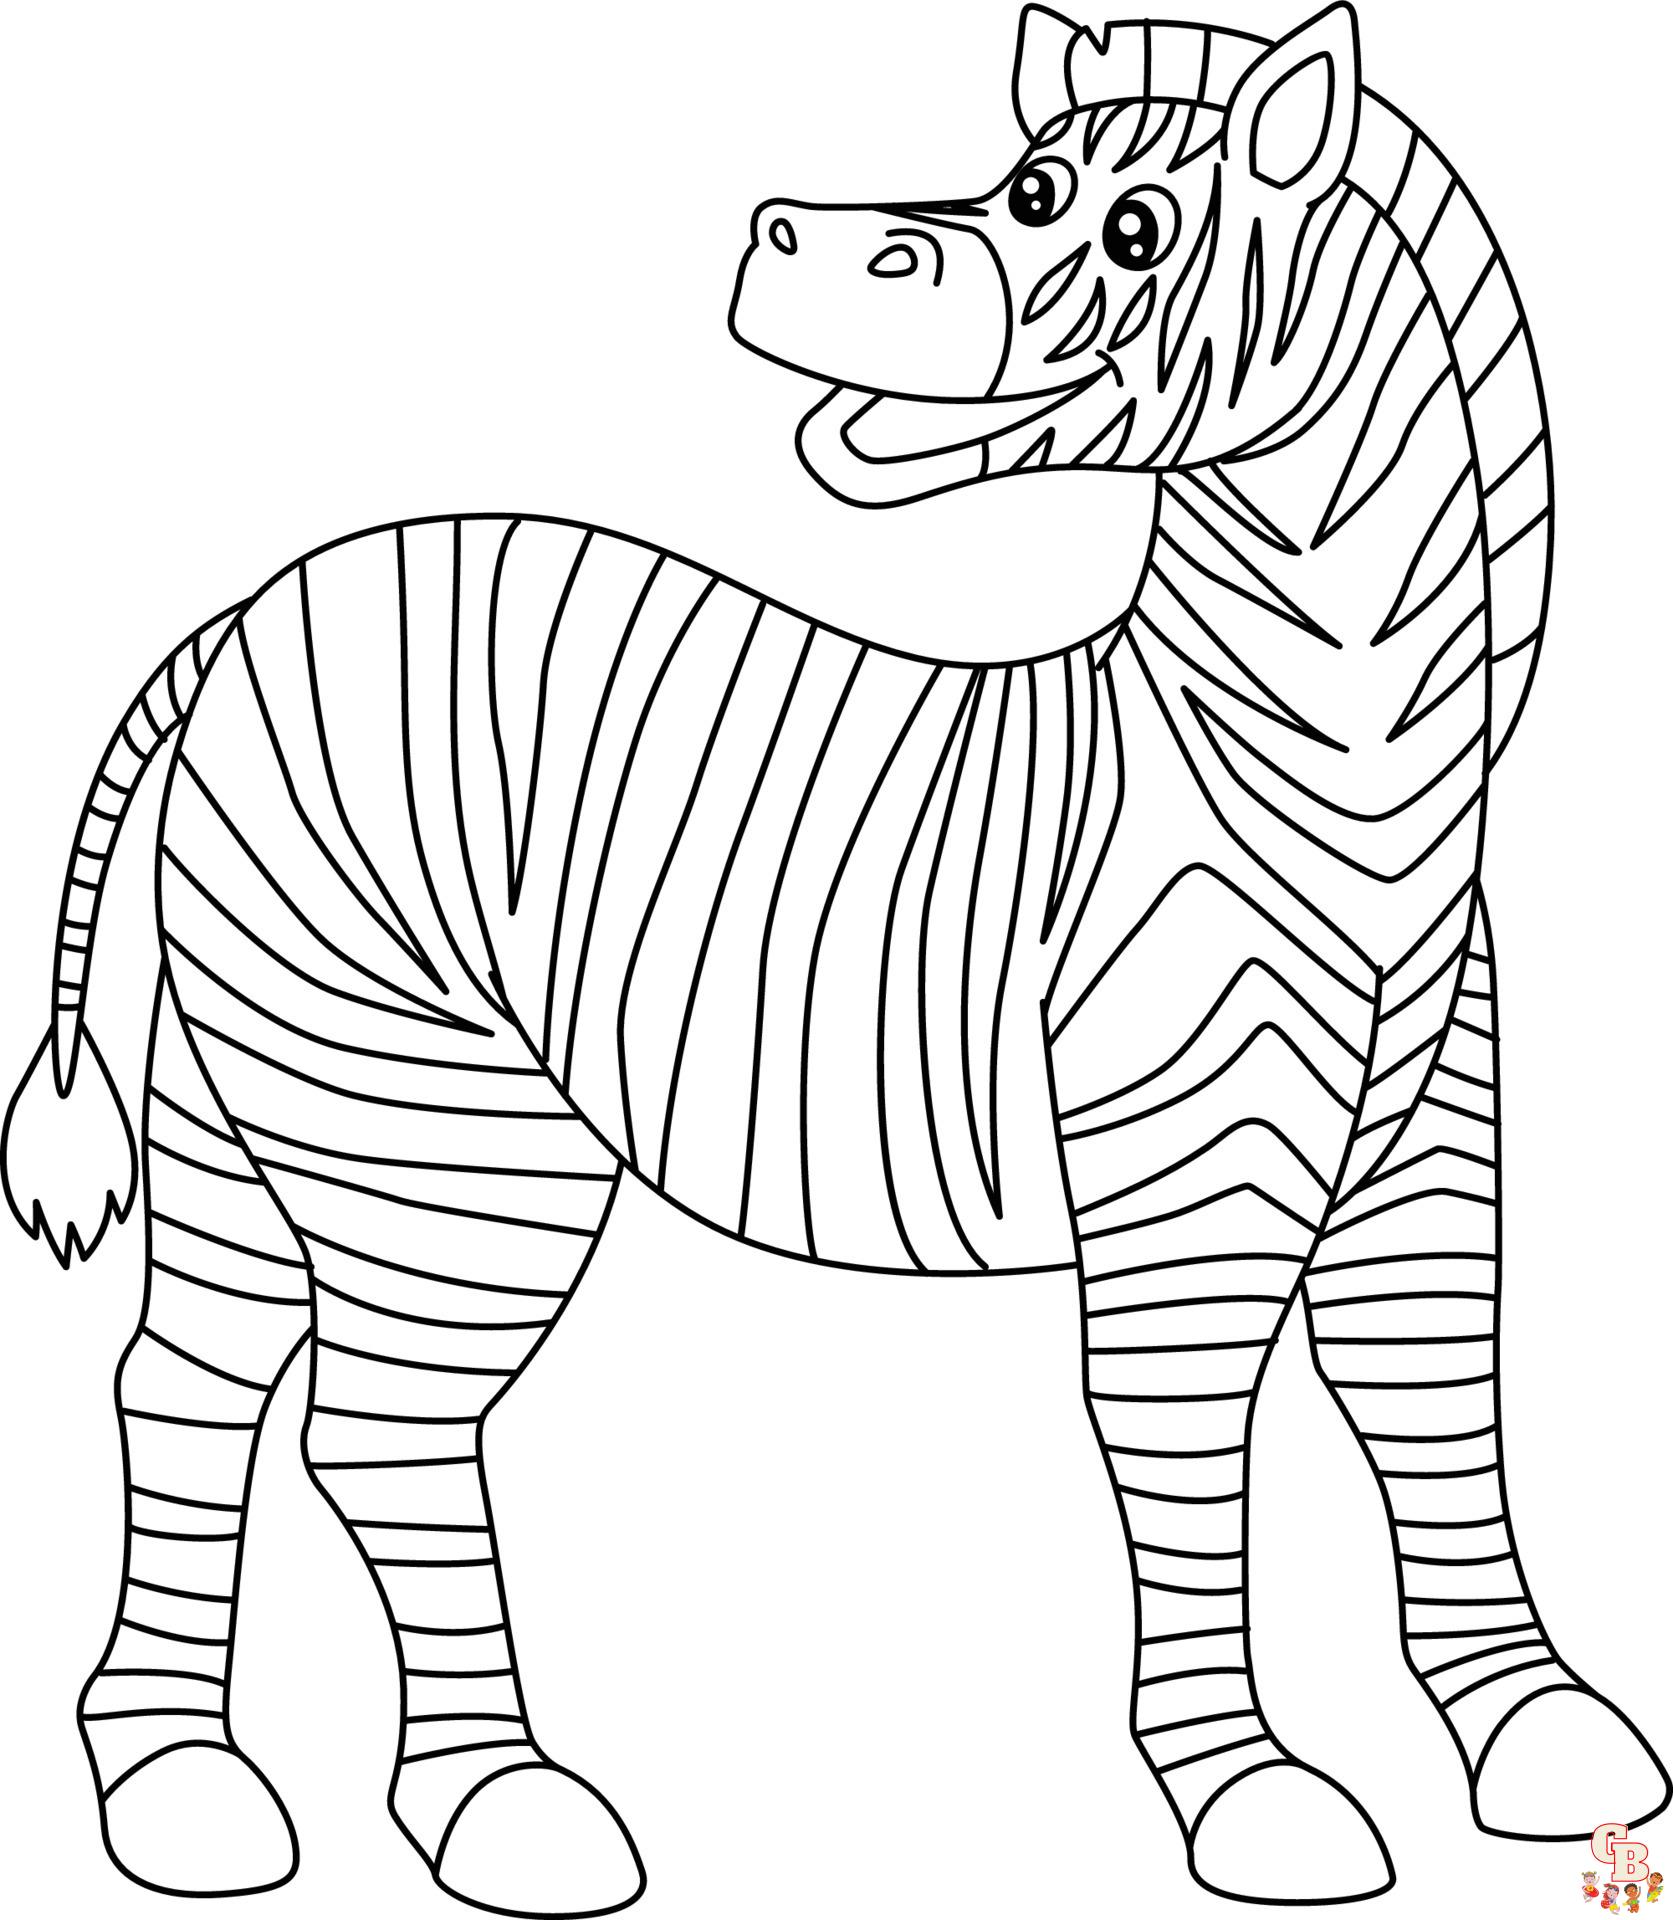 Zebra ausmalbilder zum ausdrucken